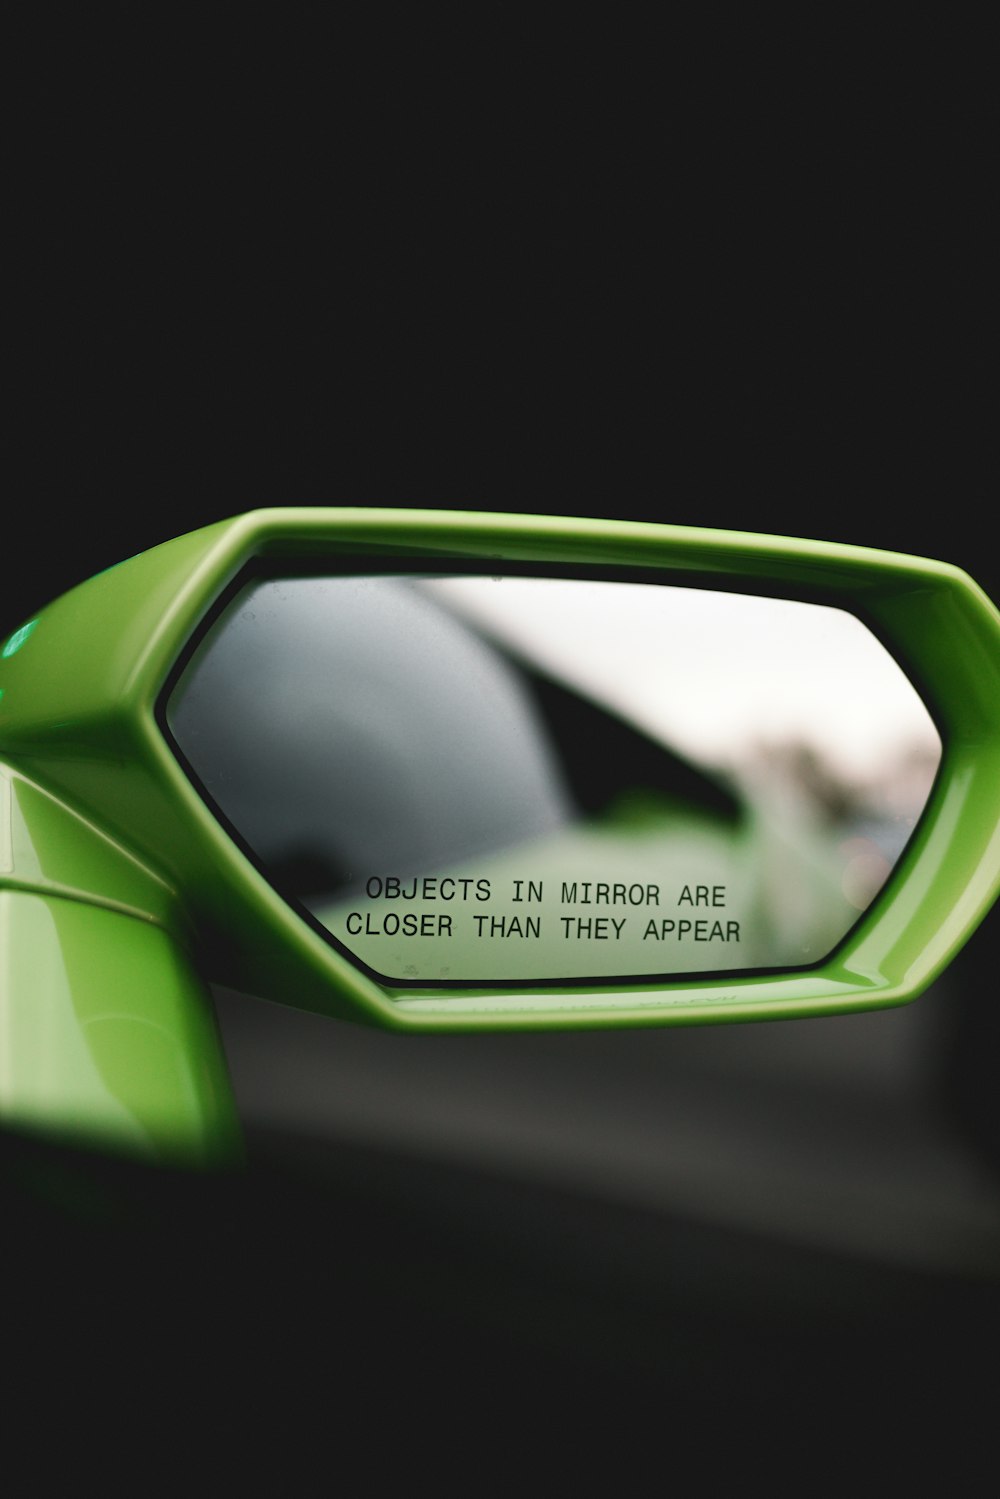 grün gerahmter Fahrzeugseitenspiegel